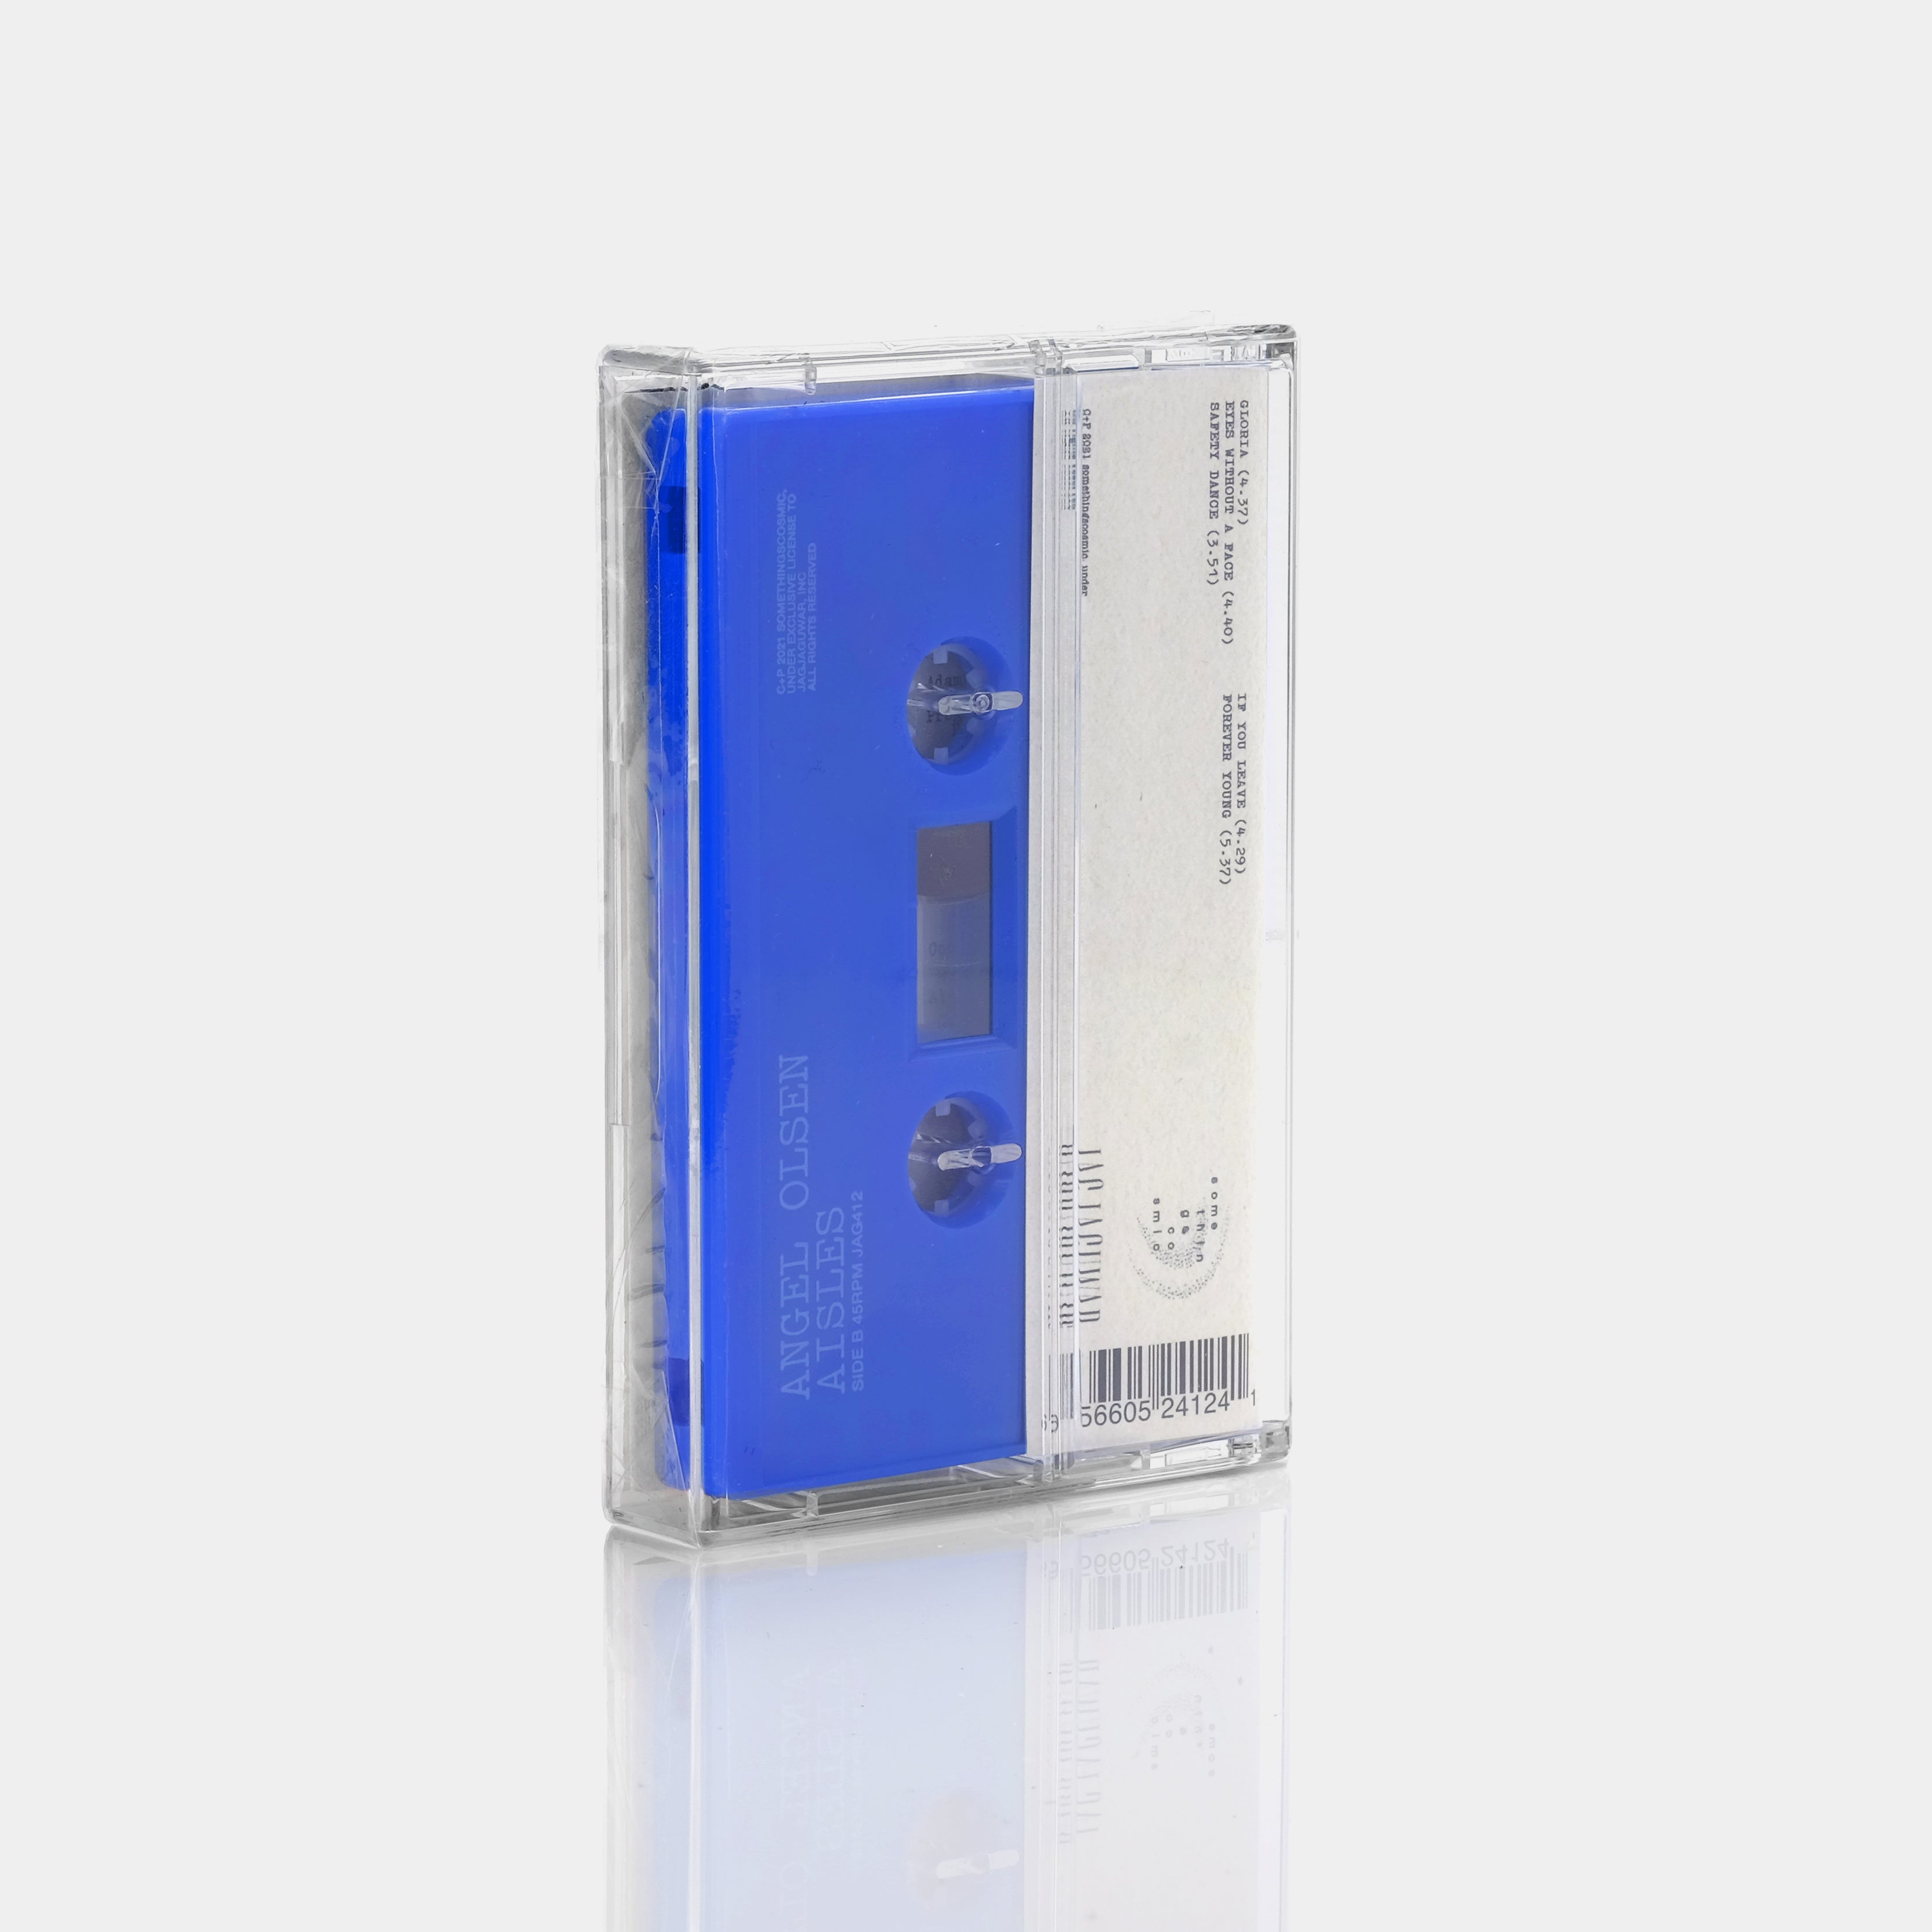 Angel Olsen - Aisles Cassette Tape